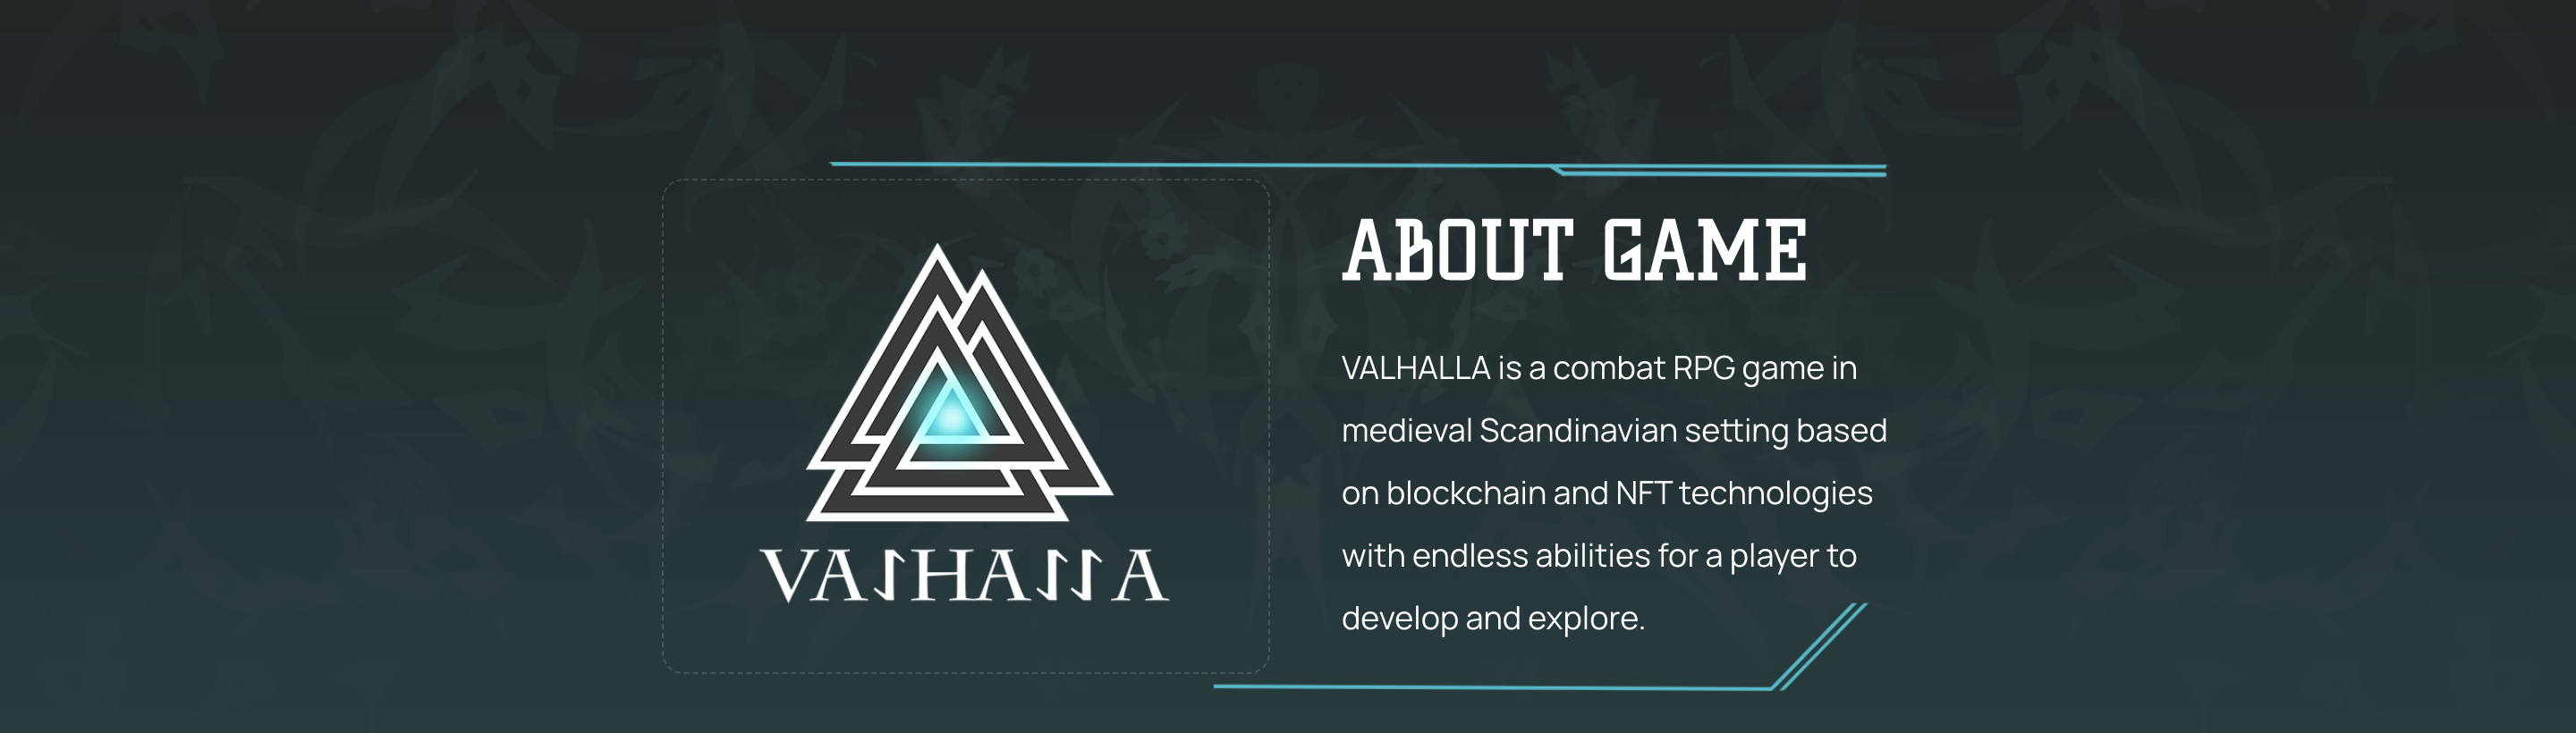 Valhalla About